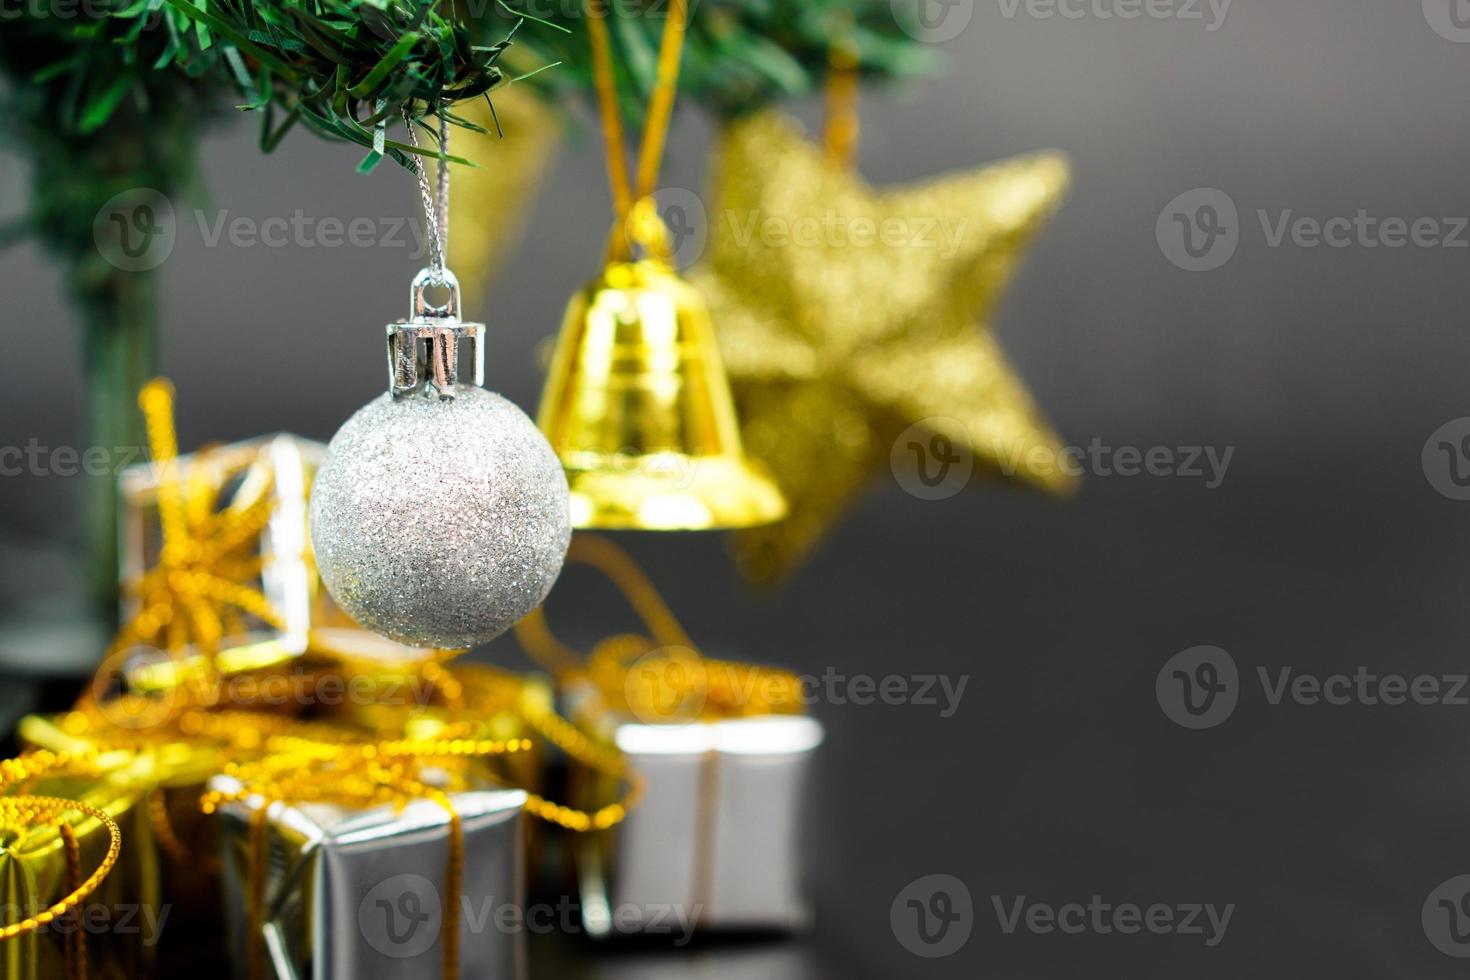 árvore de natal com item decorado pendurado em uma árvore e caixa de presente debaixo da árvore de natal. feliz natal, feliz ano novo e conceito de cartão de felicitações. foto